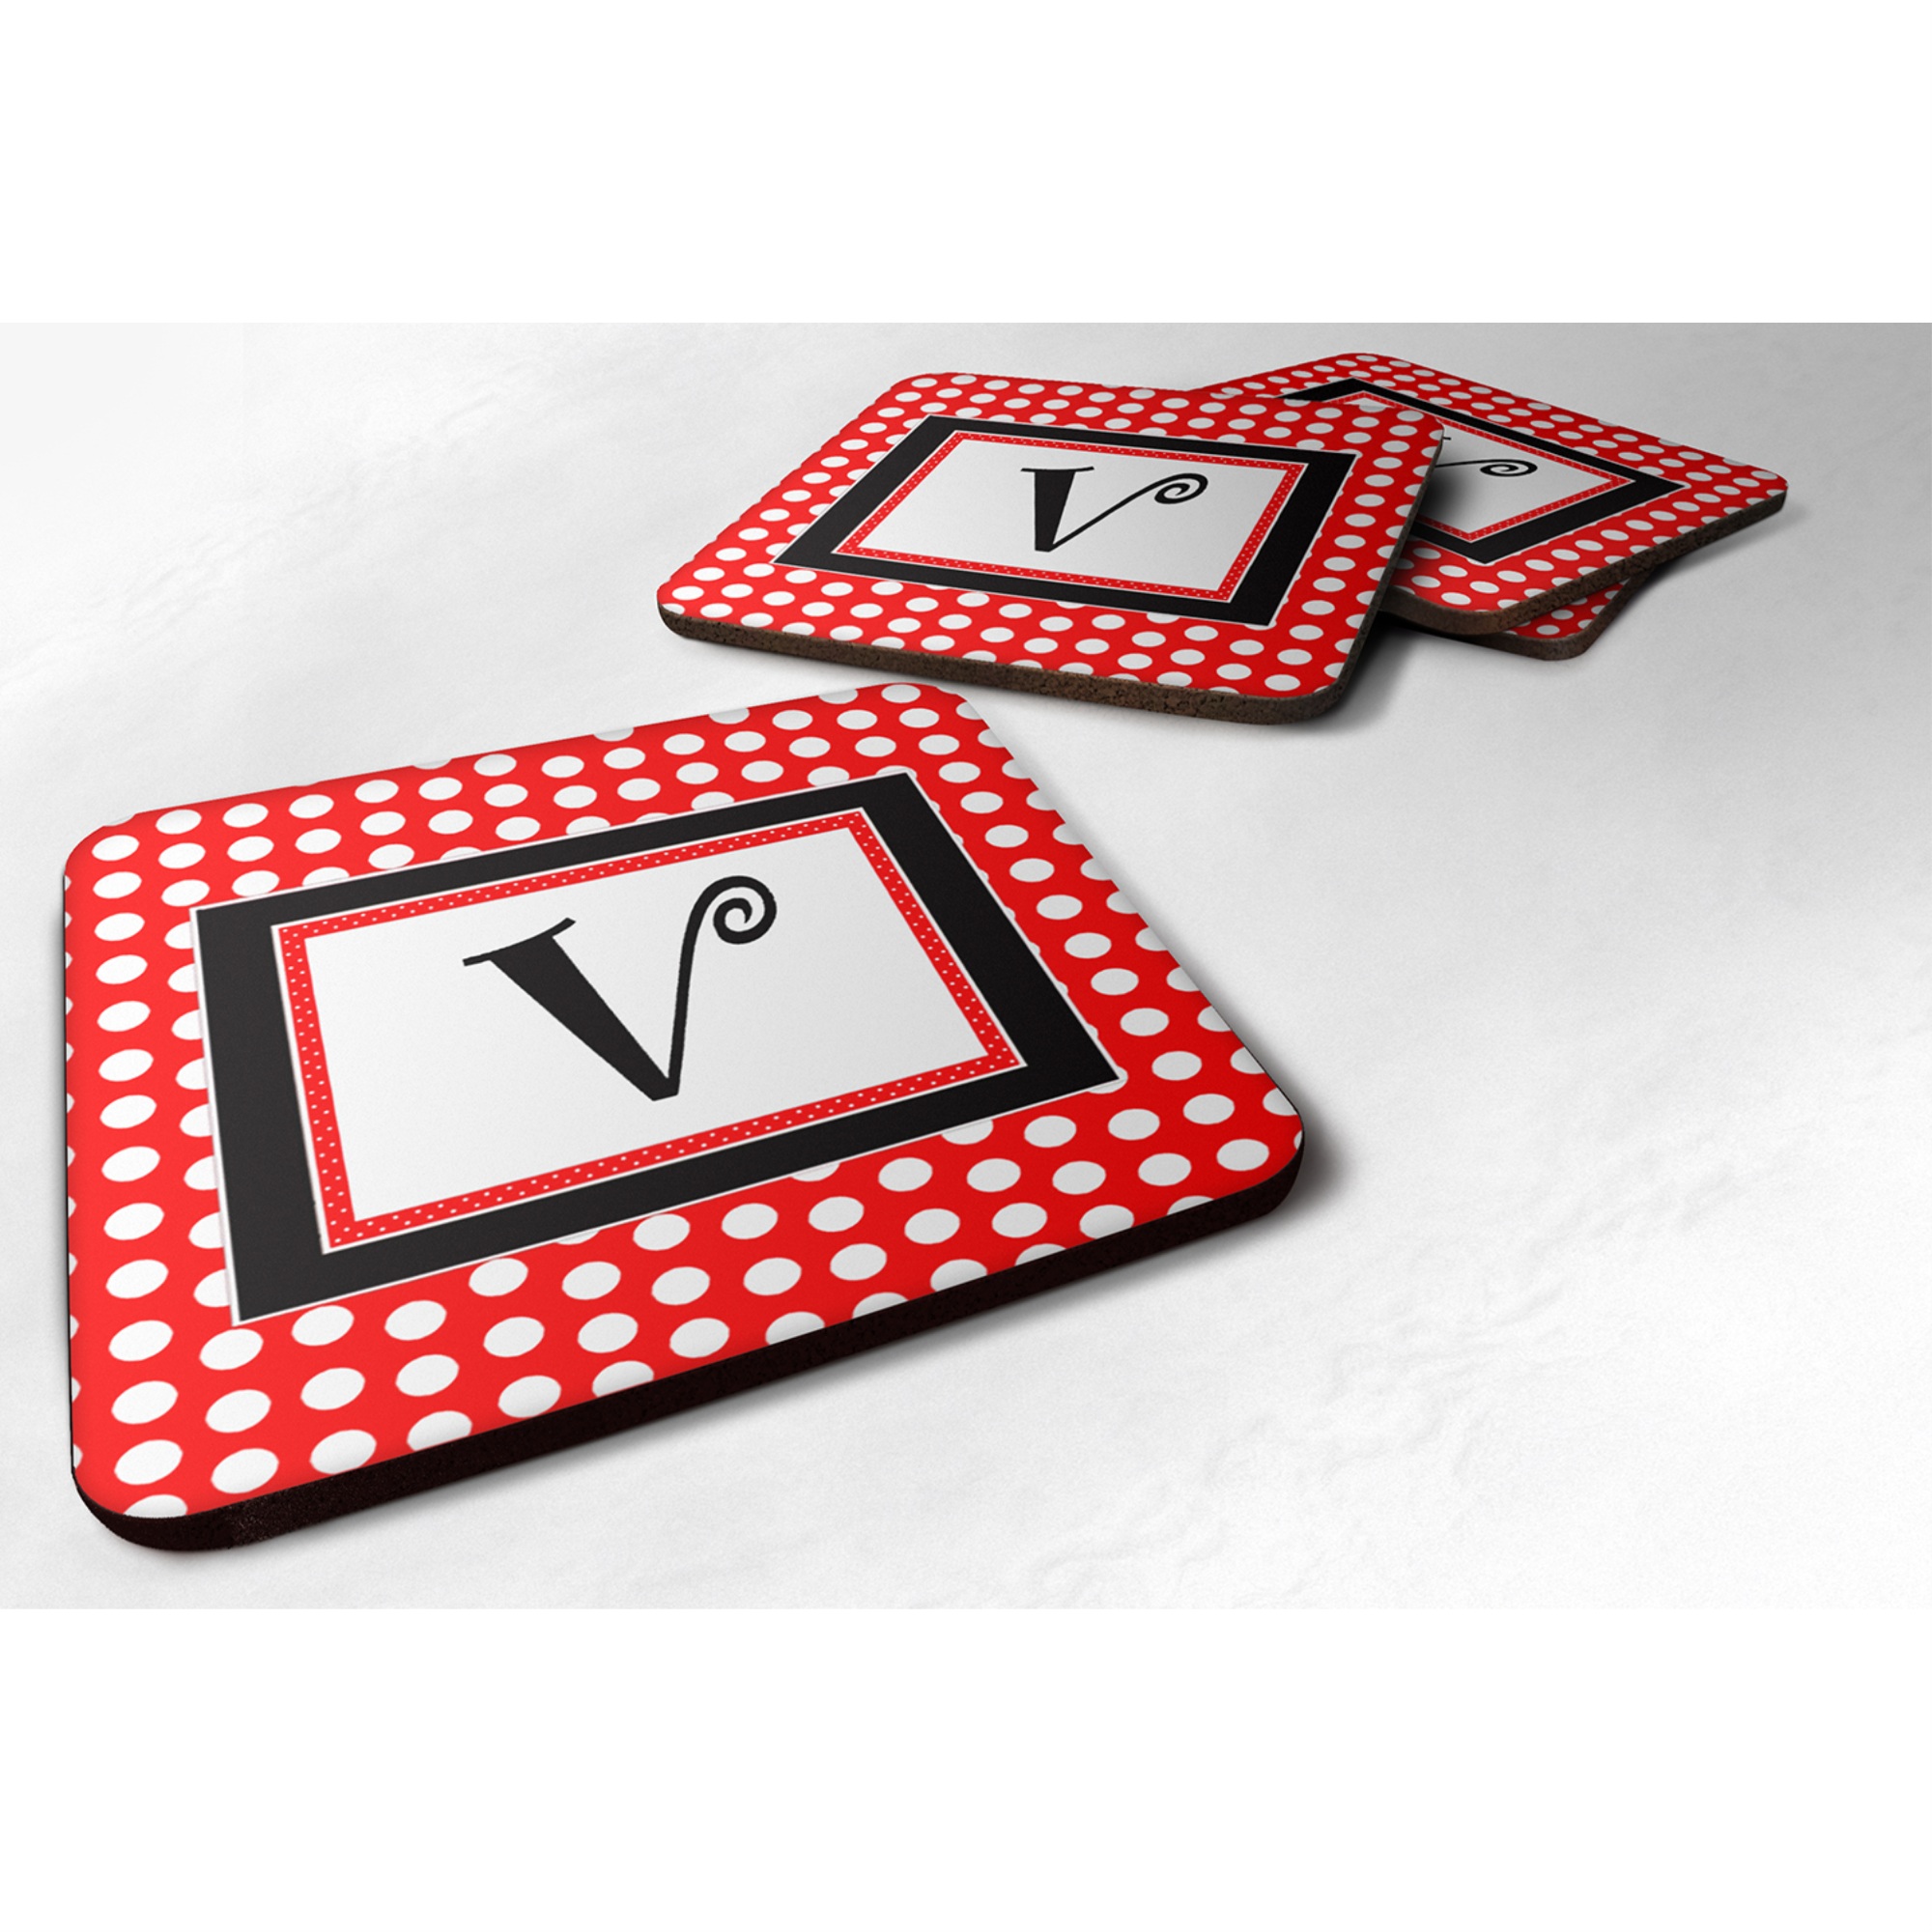 Caroline's Treasures CJ1012-VFC Monogram-Red Black Polka Dots Foam Coasters (Set of 4), Initial Letter V, 3.5"" H x 3.5"" W, Multicolor"